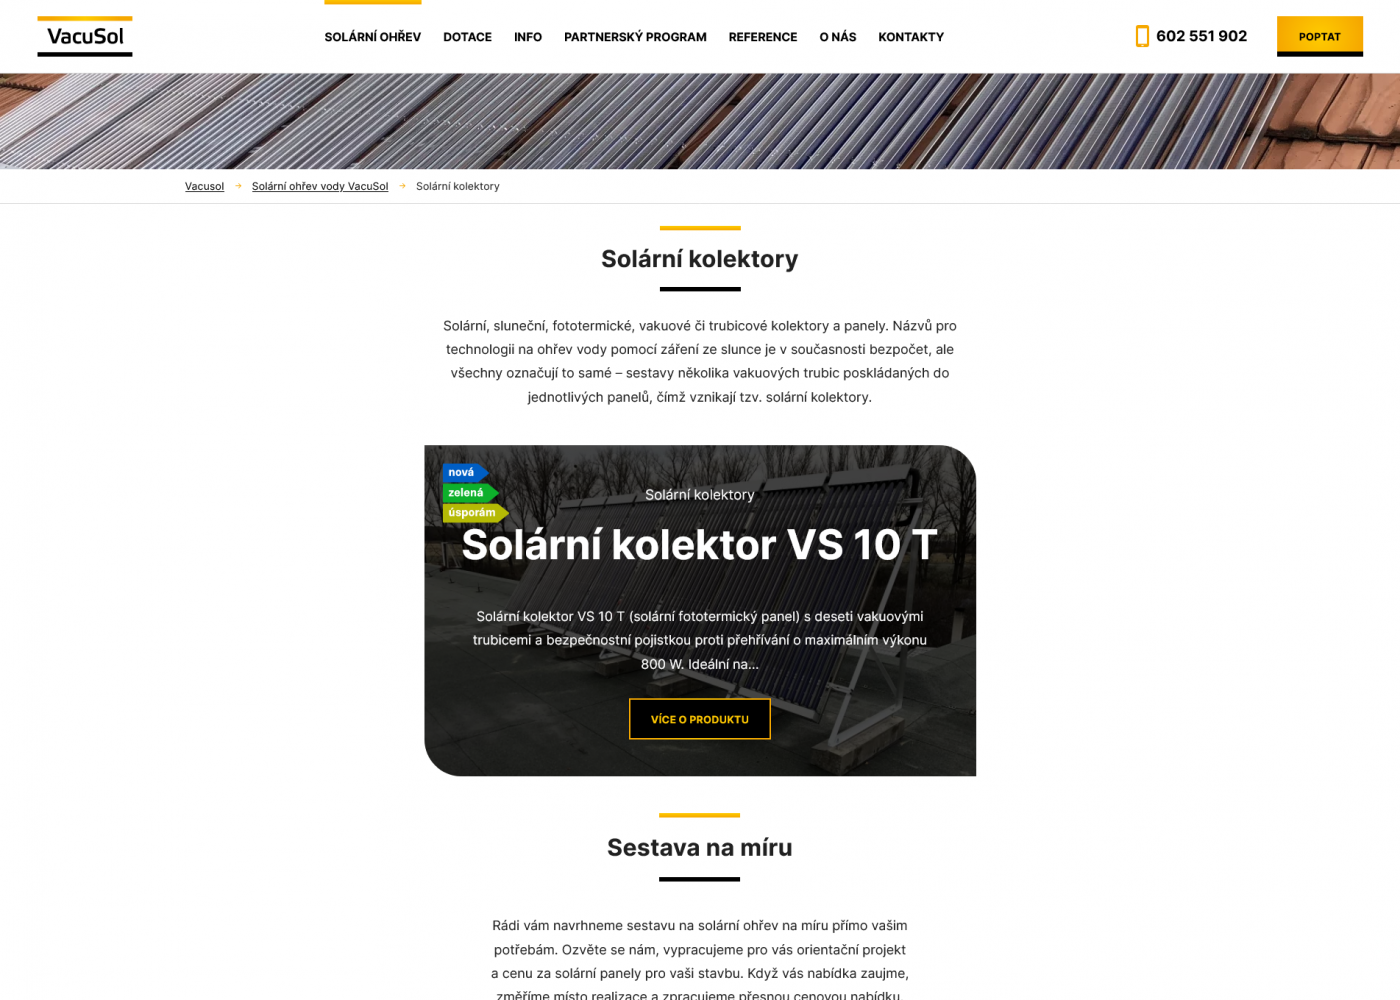 Tvorba nového webu pro VacuSol ve svérázném designu - Porovnání, nová verze  #1